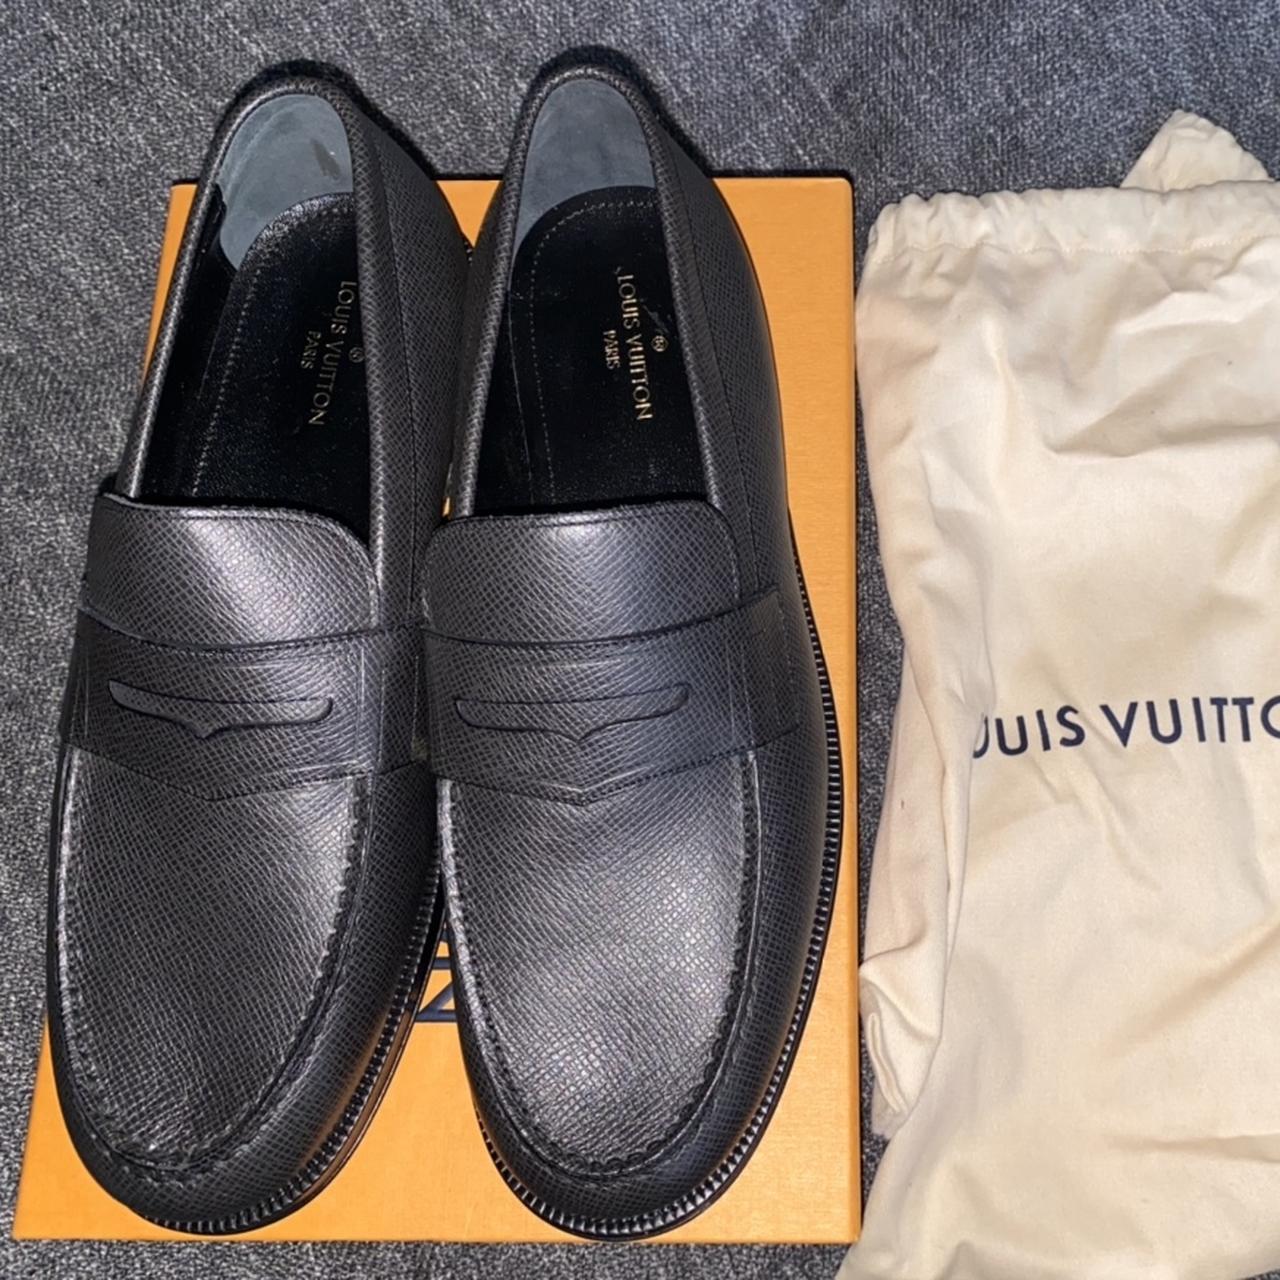 Sold Out Louis Vuitton Sorbonne Loafers sz 6 (sz 8.5 Men)